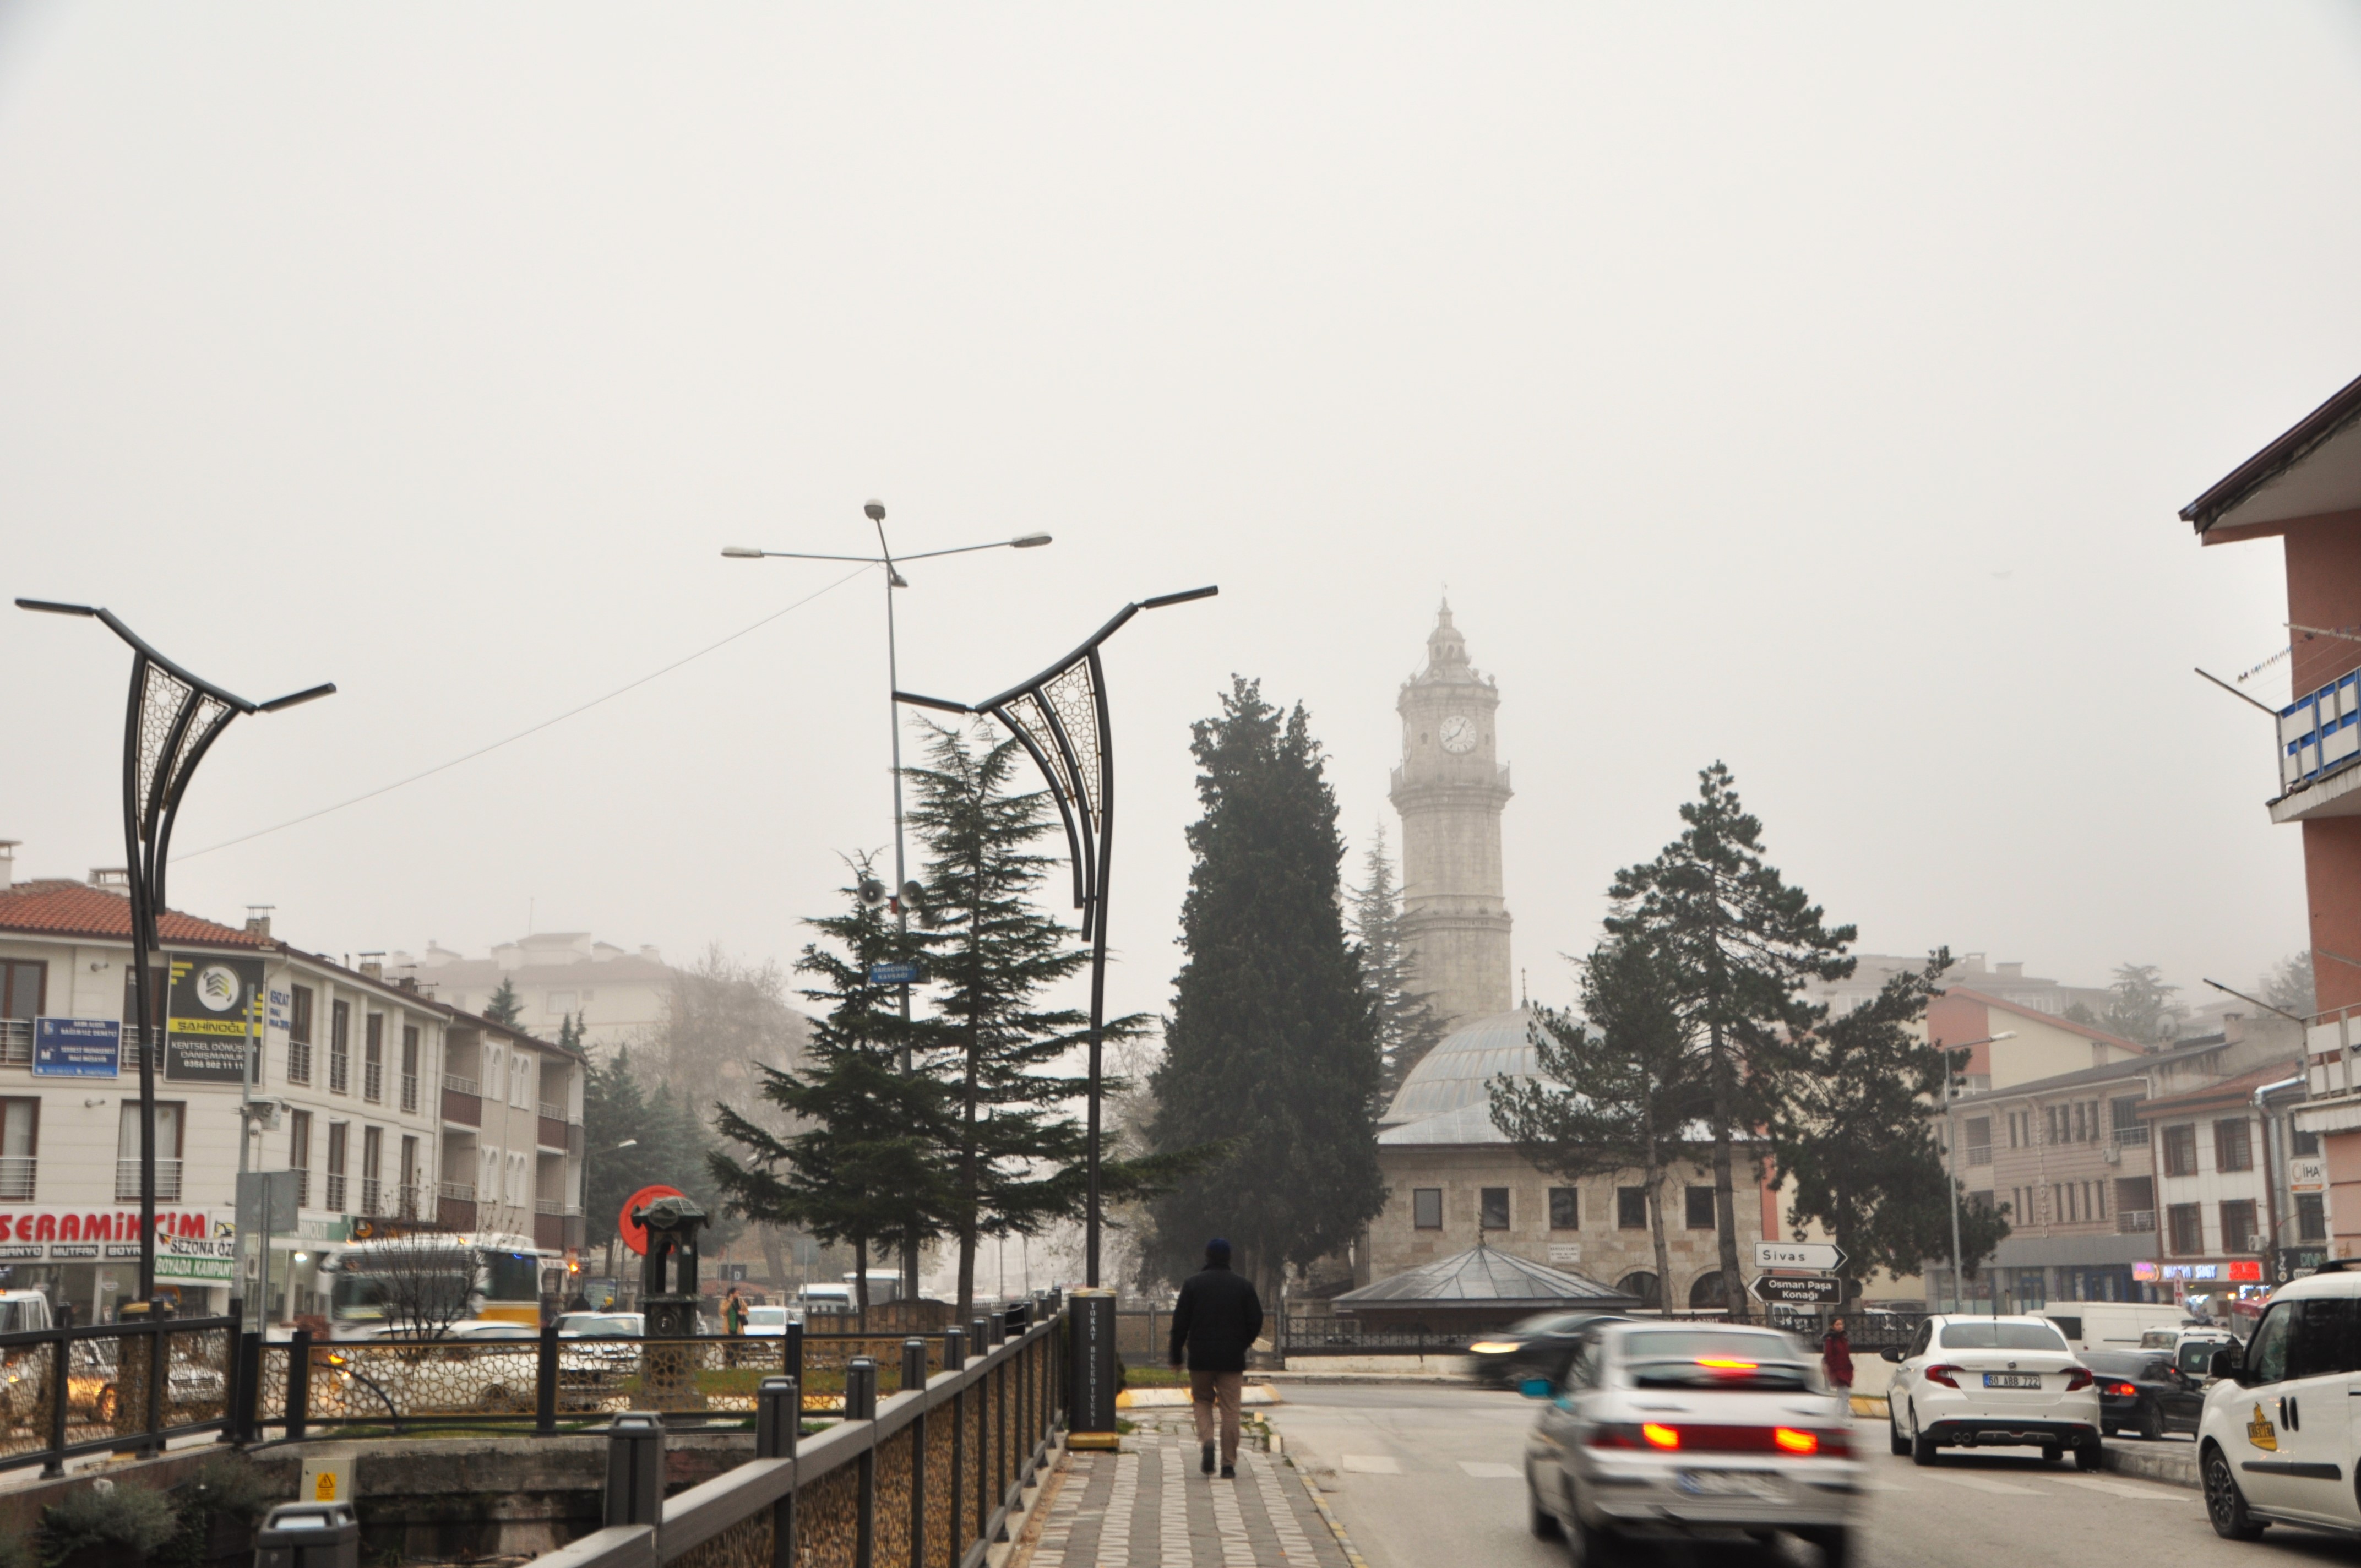 Tokat’ta şehir merkezinin üzerini kaplayan sis bulutları, doğa harikası manzaralar oluşturdu